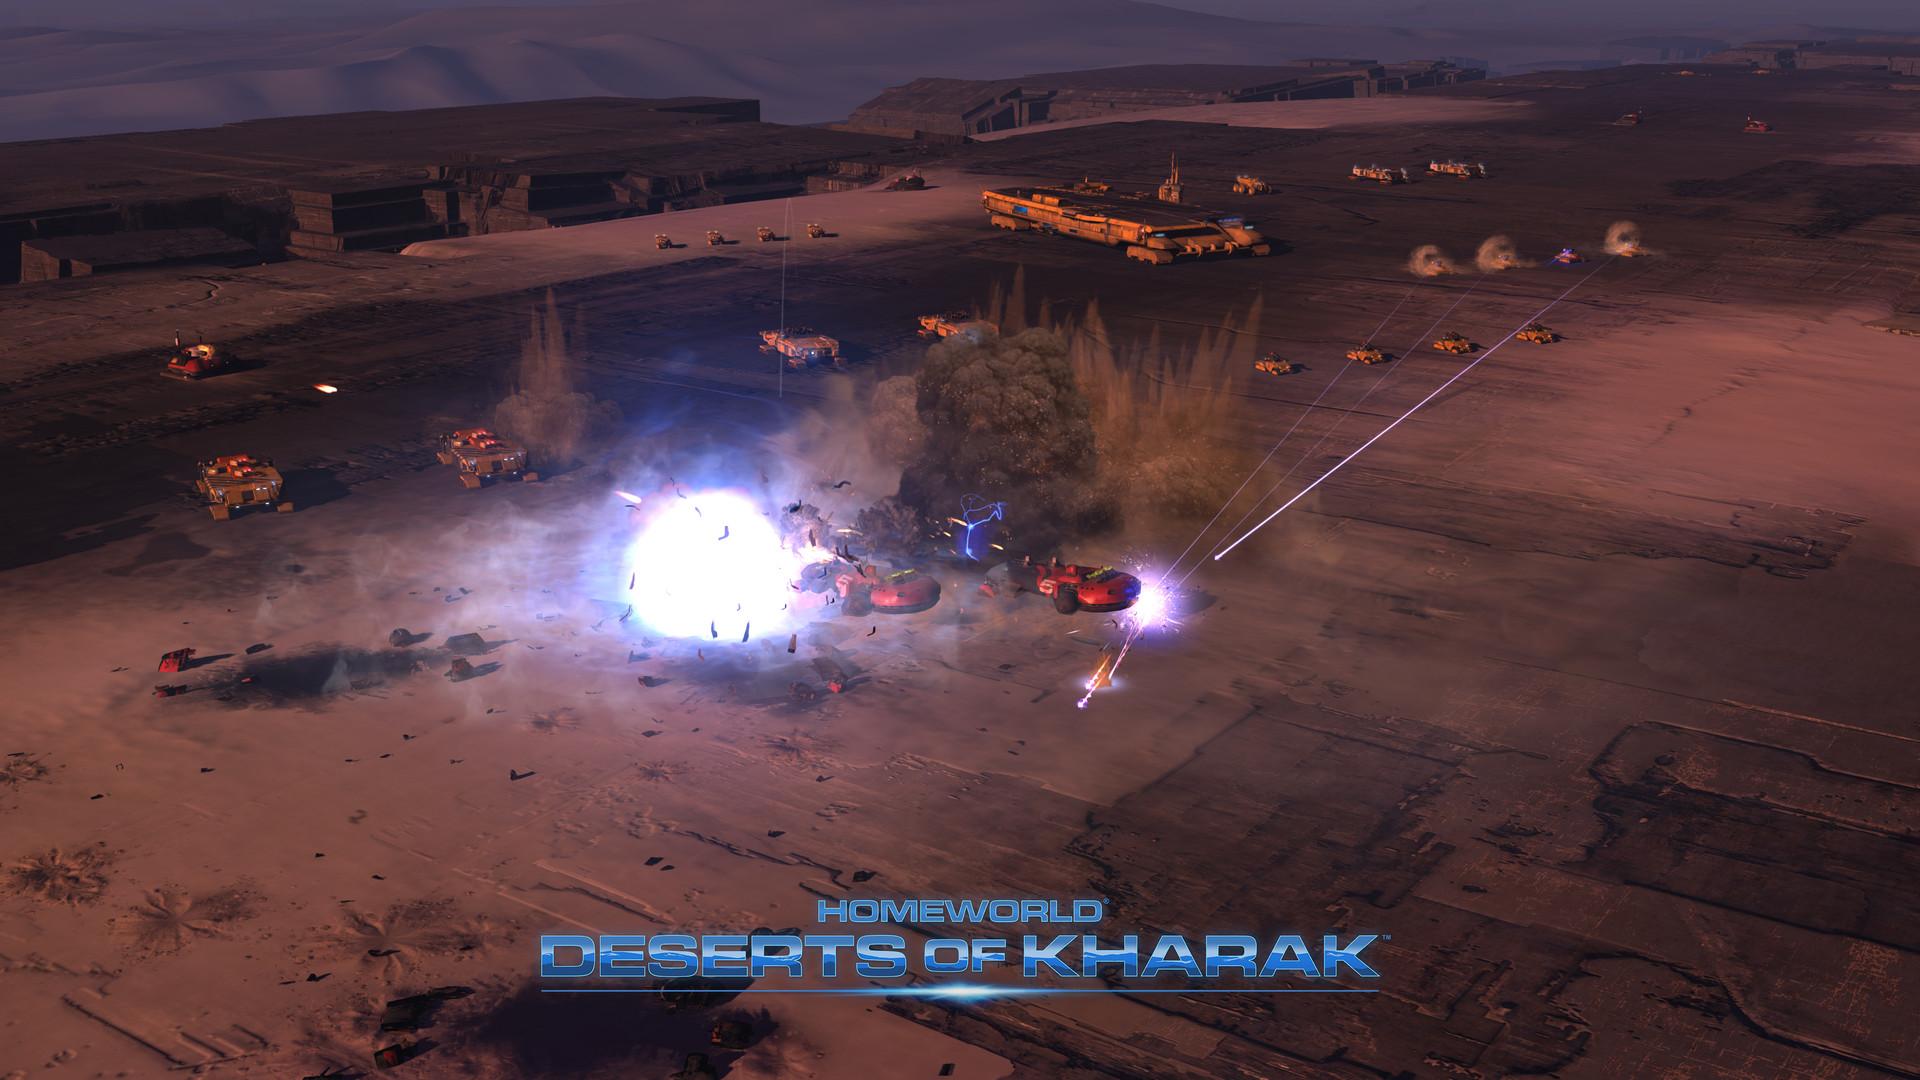 Screenshot №6 from game Homeworld: Deserts of Kharak